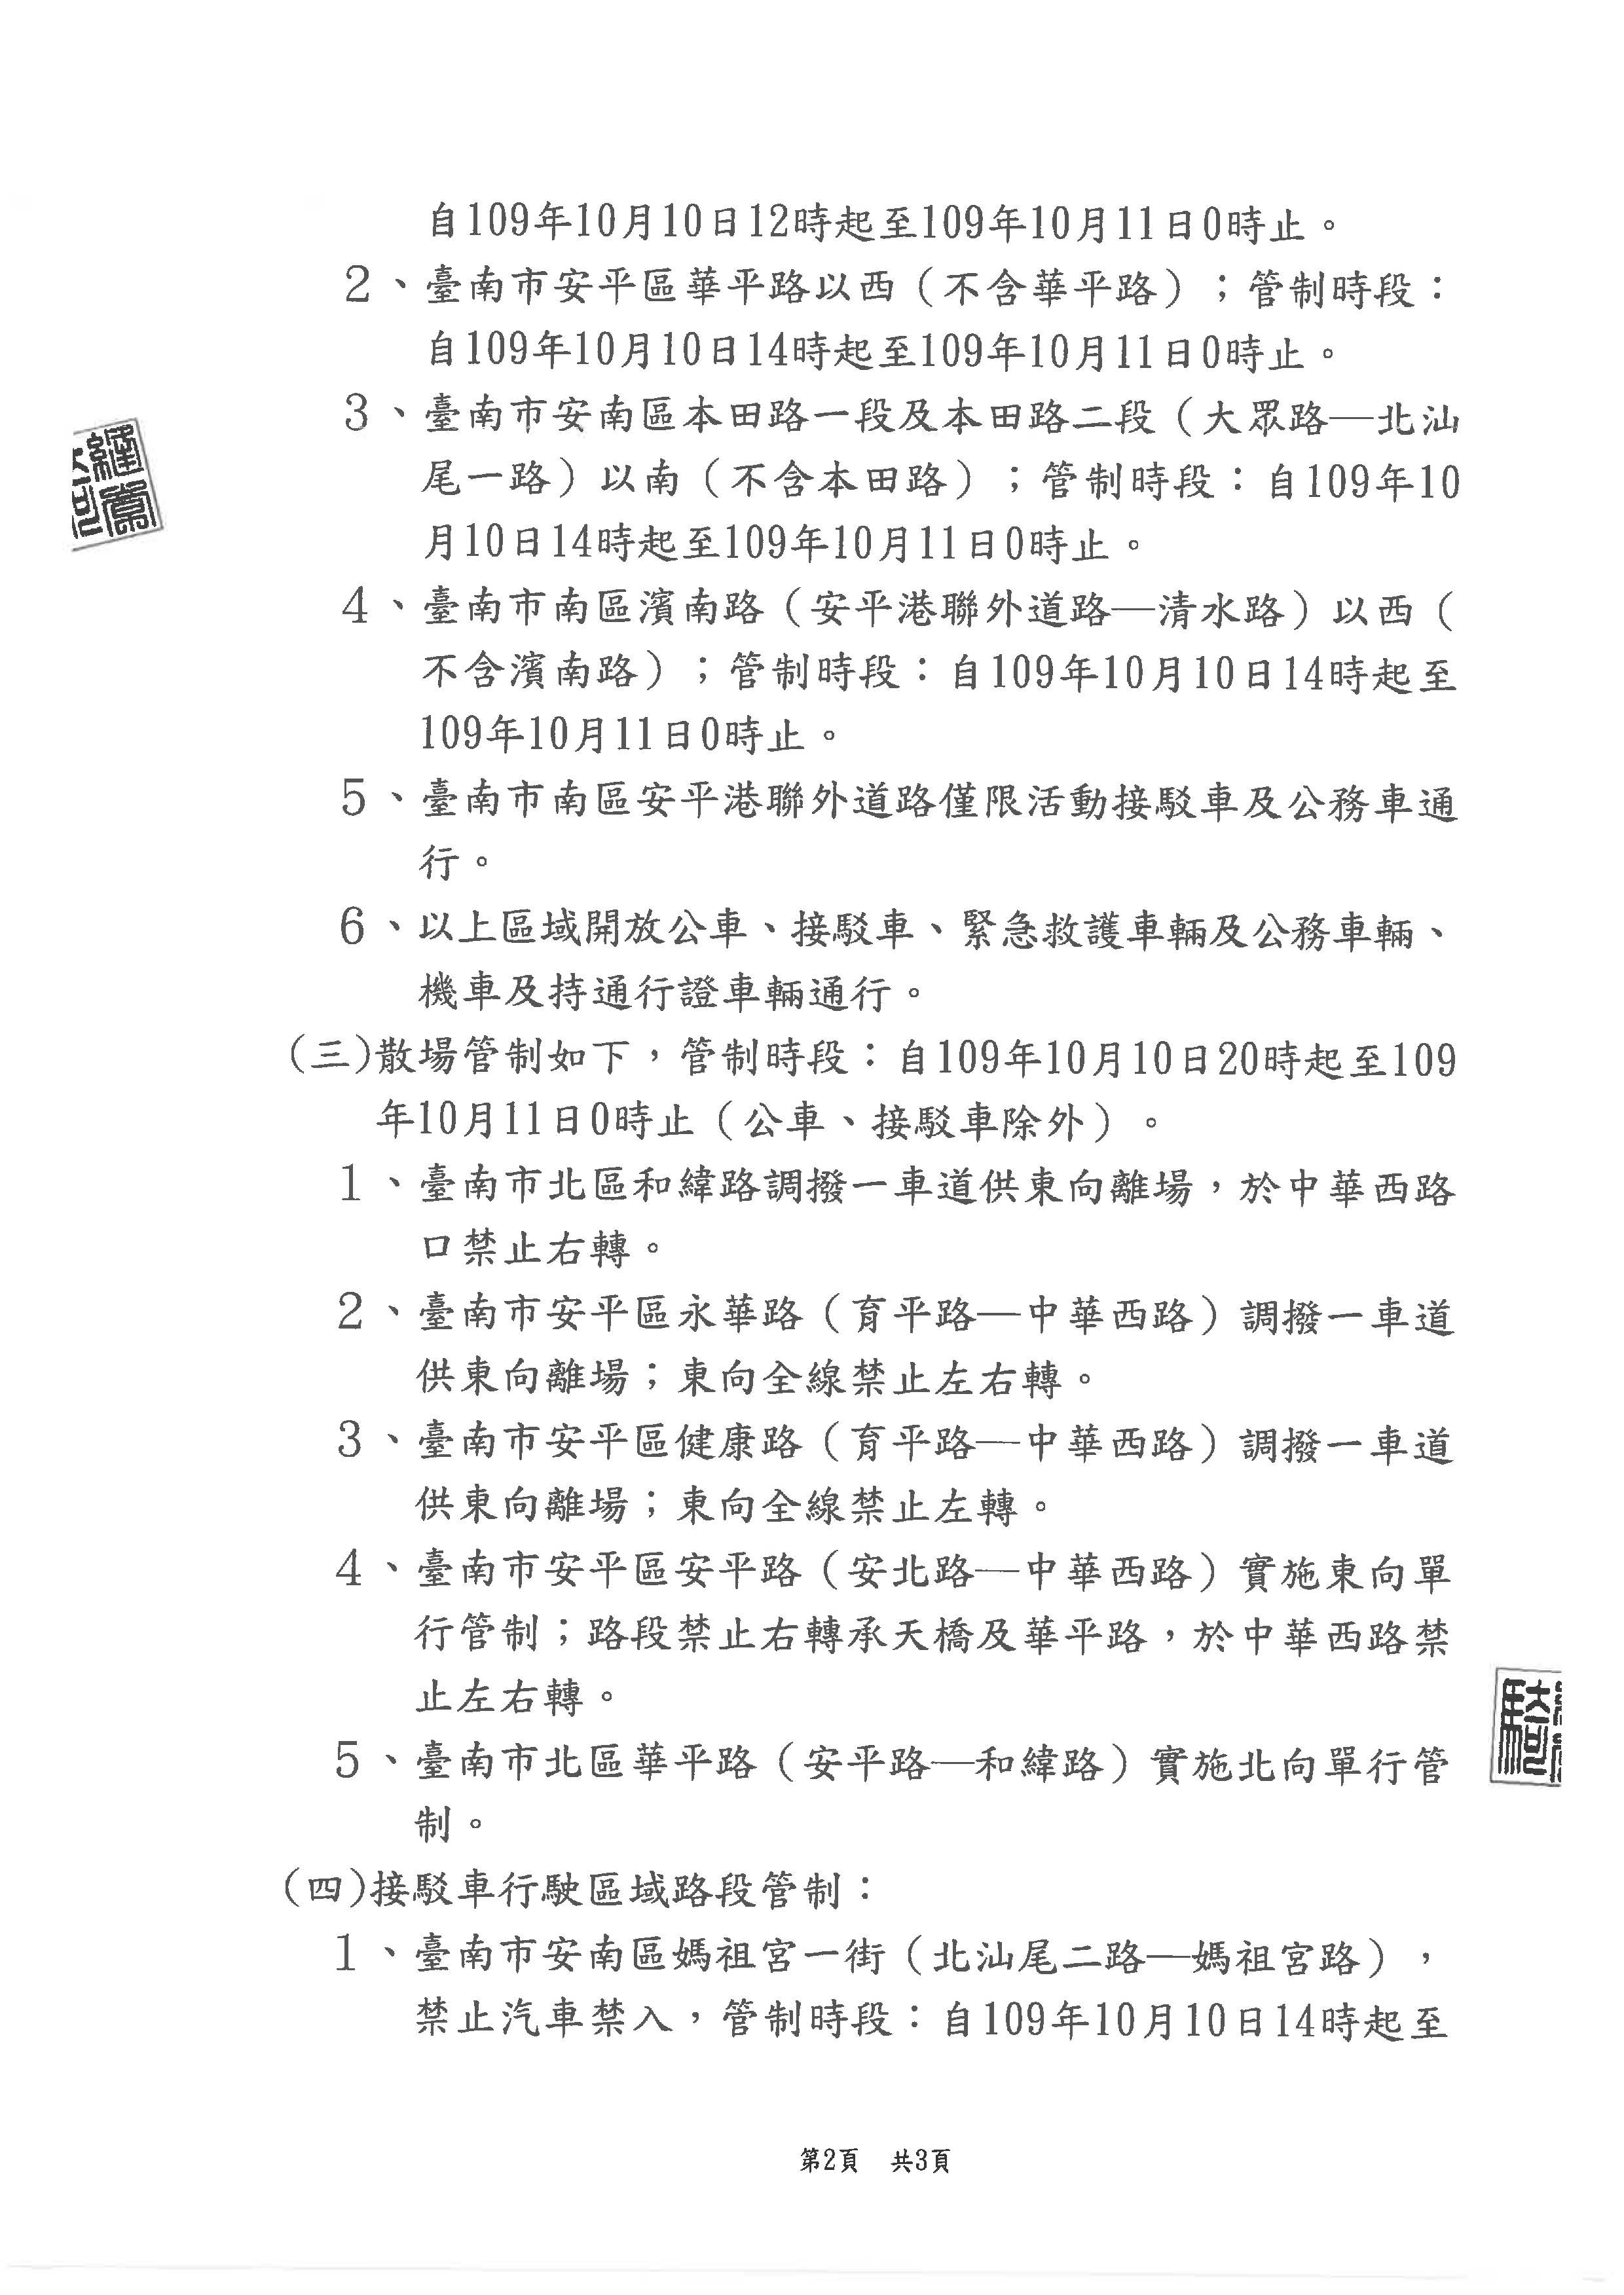 更正公告2020國慶焰火在臺南活動交通管制頁面2